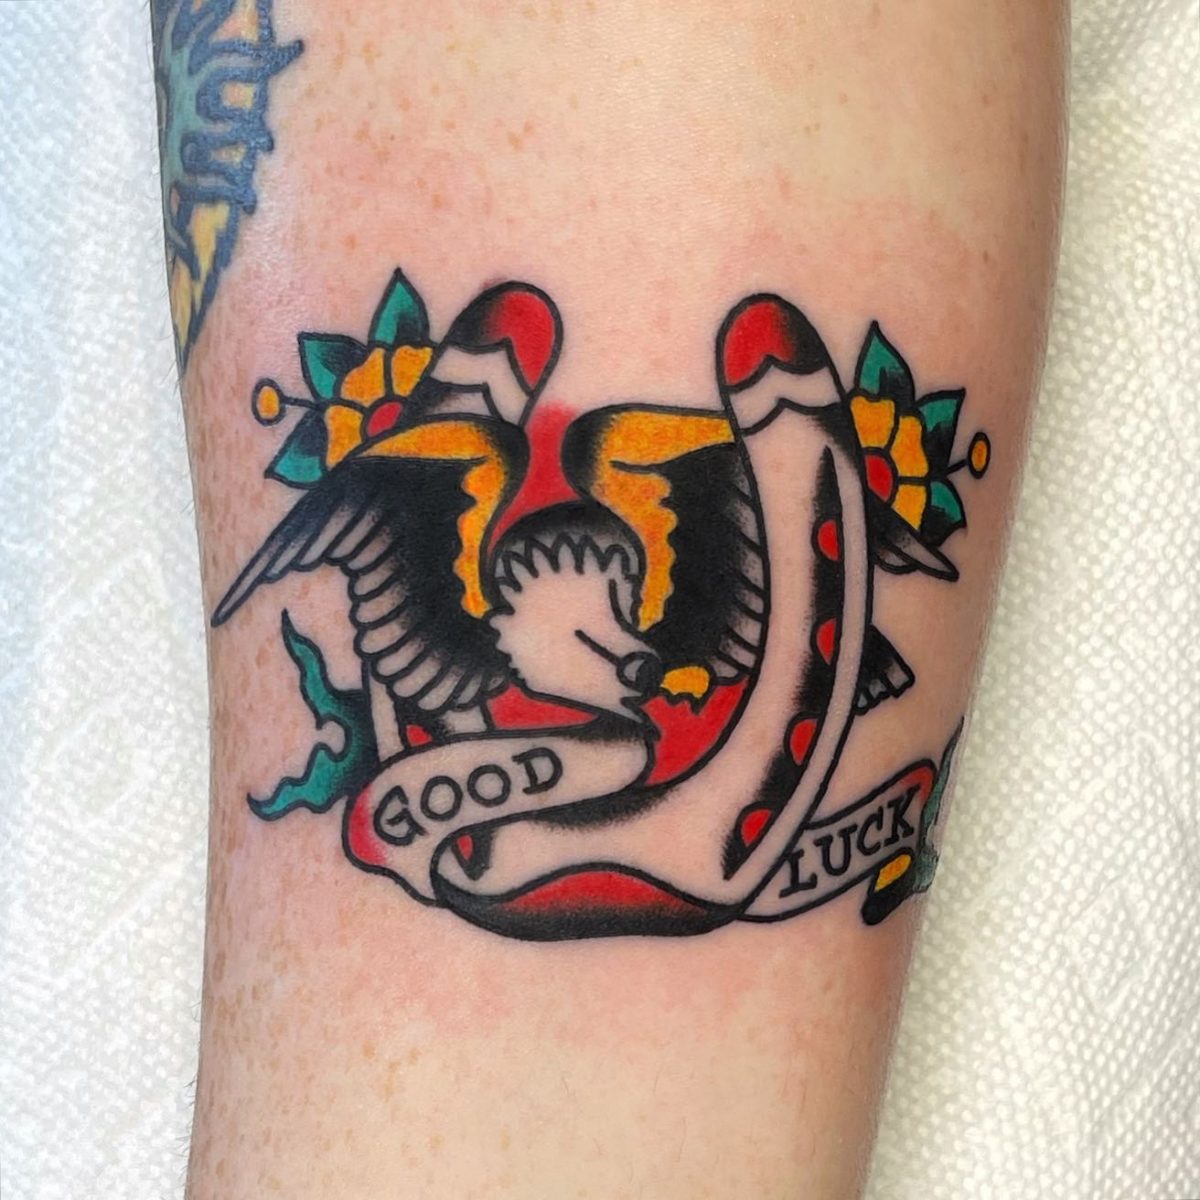 Sailor Jerry Tattoos